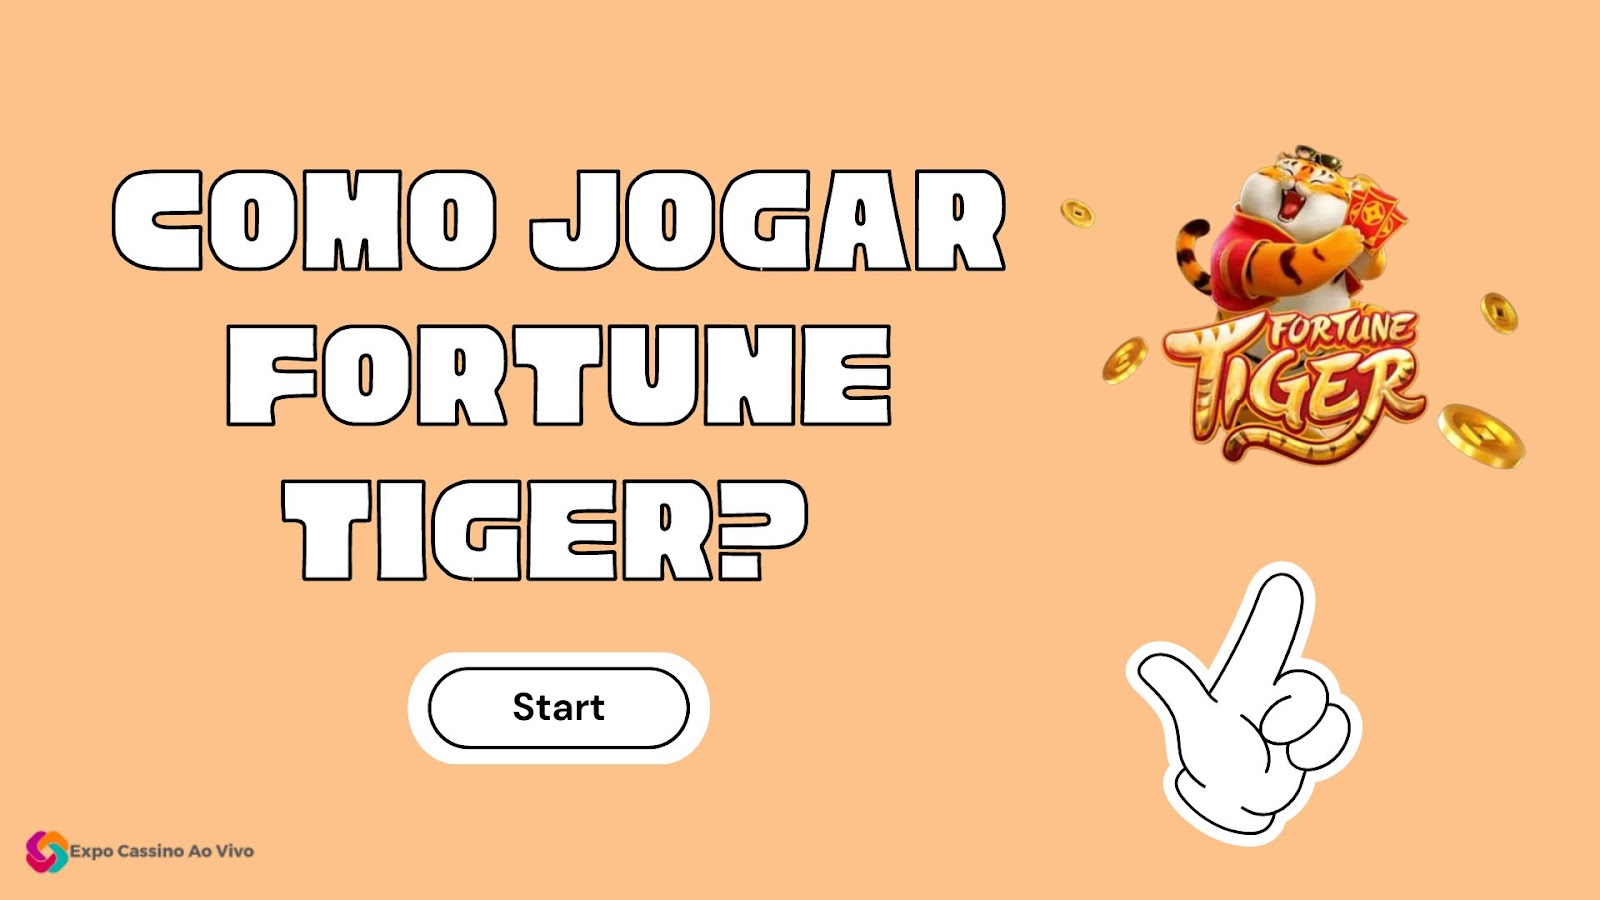 Como ganhar com a caça-níquel Fortune Tiger: dicas e estratégias